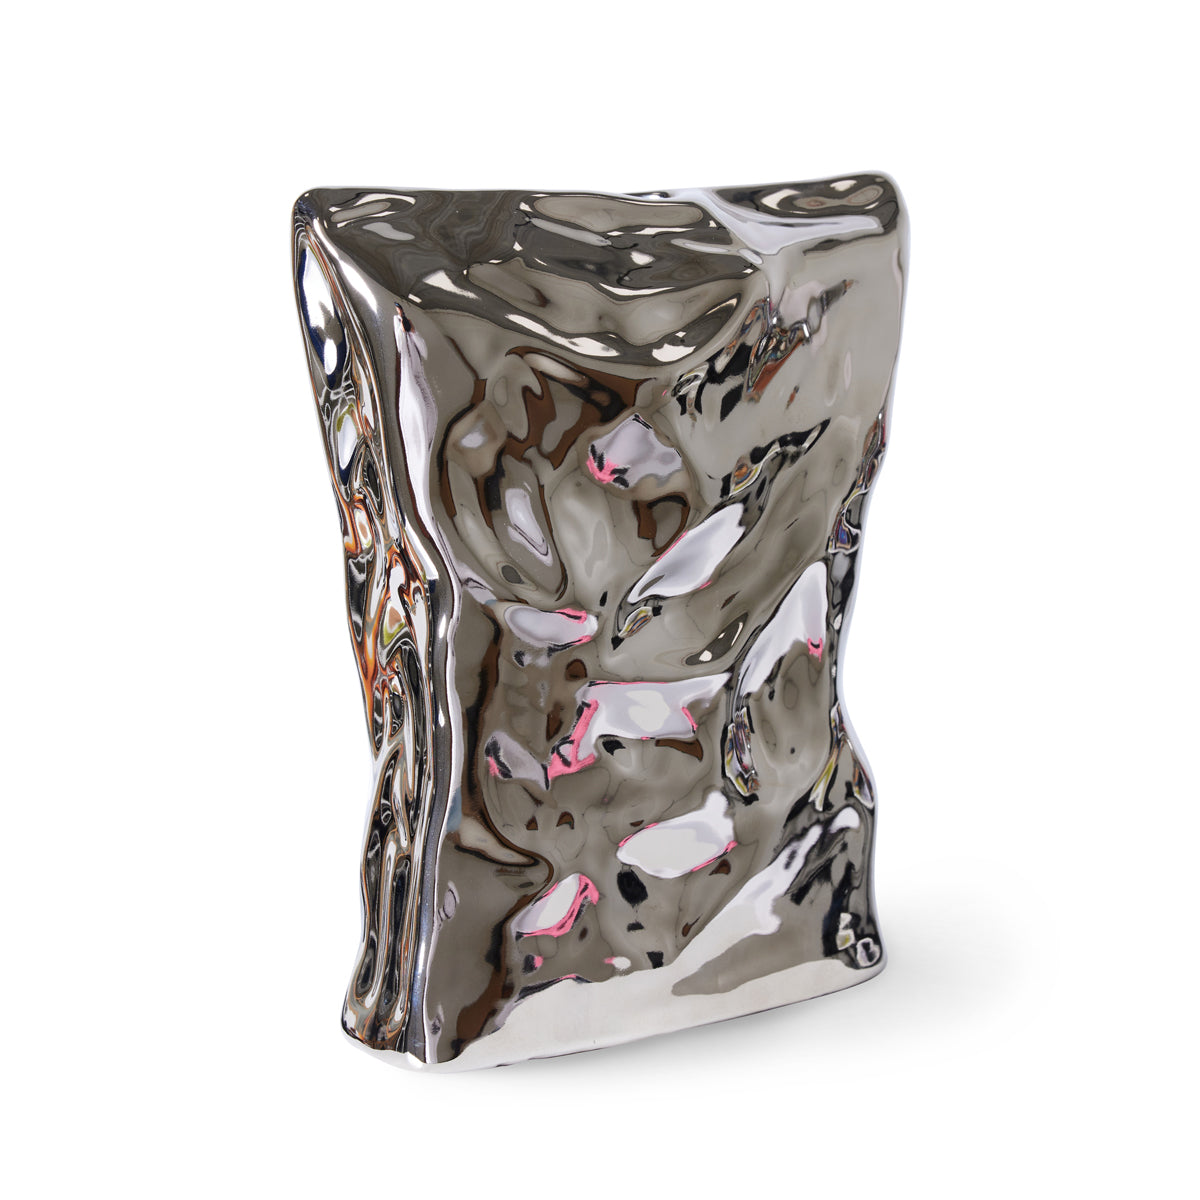 Hk Objects: Bag of Crisps Vase